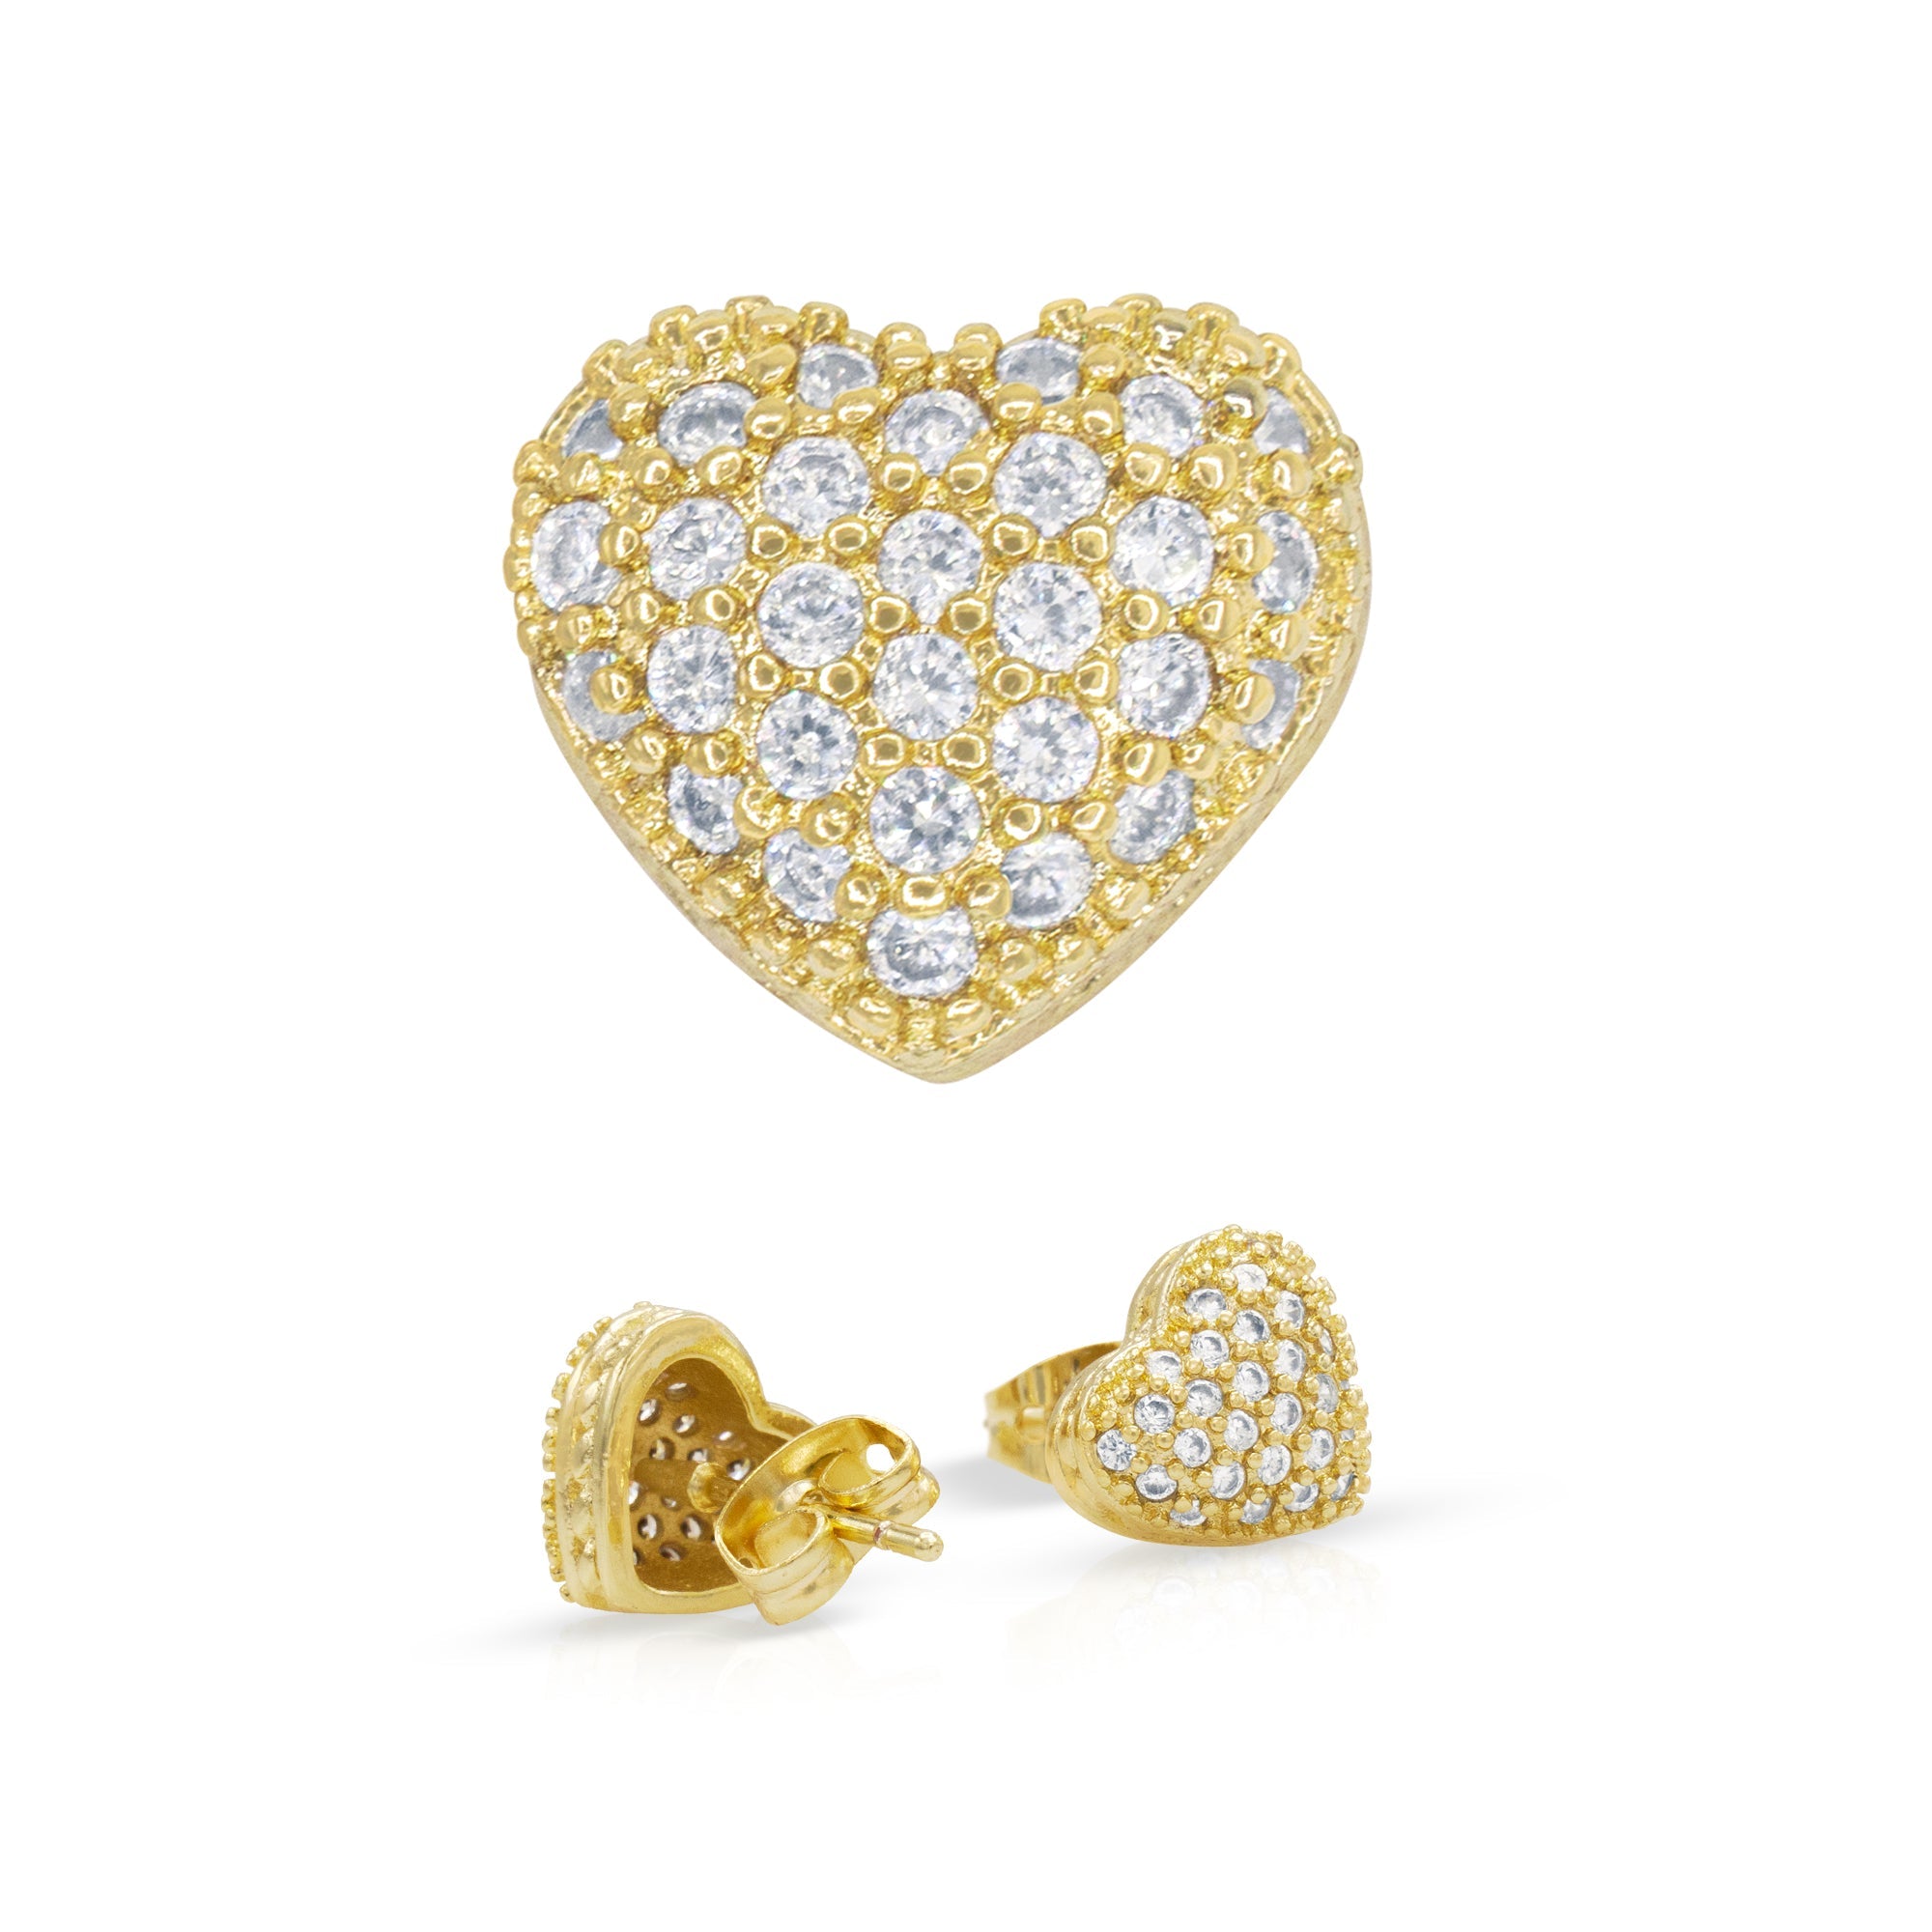 14K gold Filled CZ Heart Stud Earrings